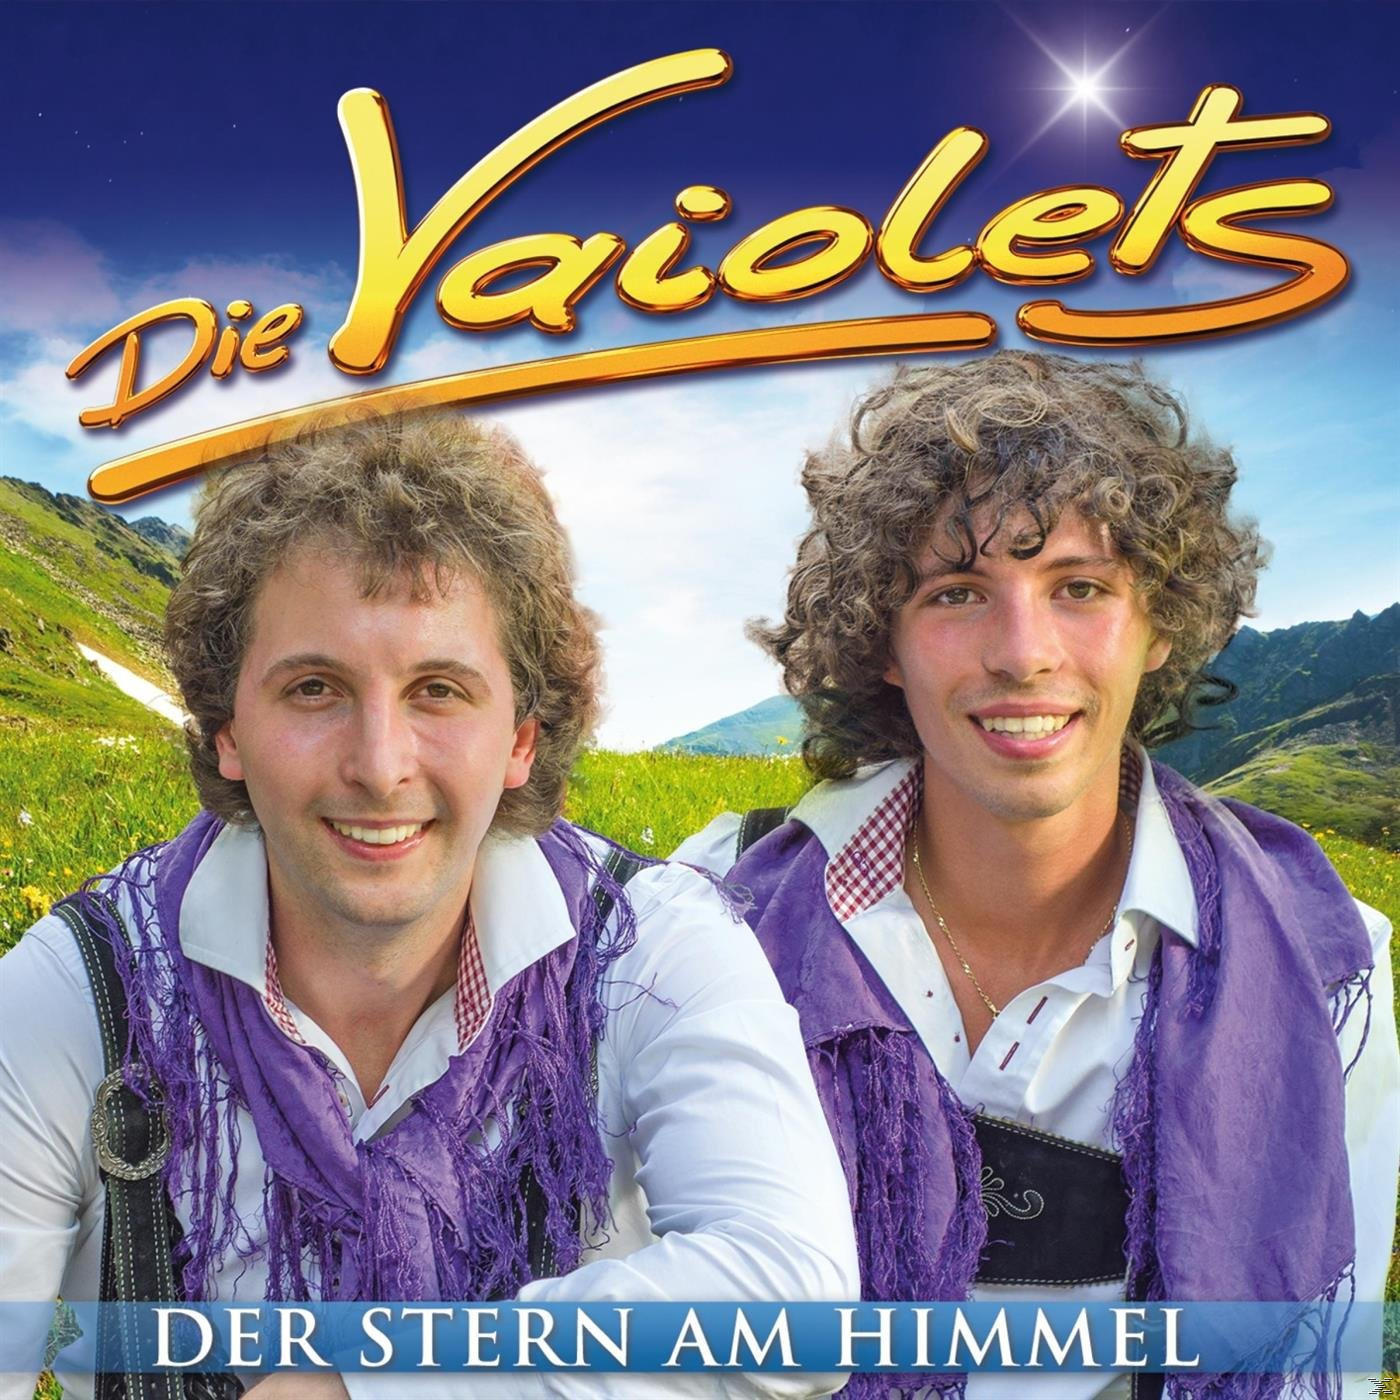 Die Vaiolets - Der Stern - Himmel (CD) Am